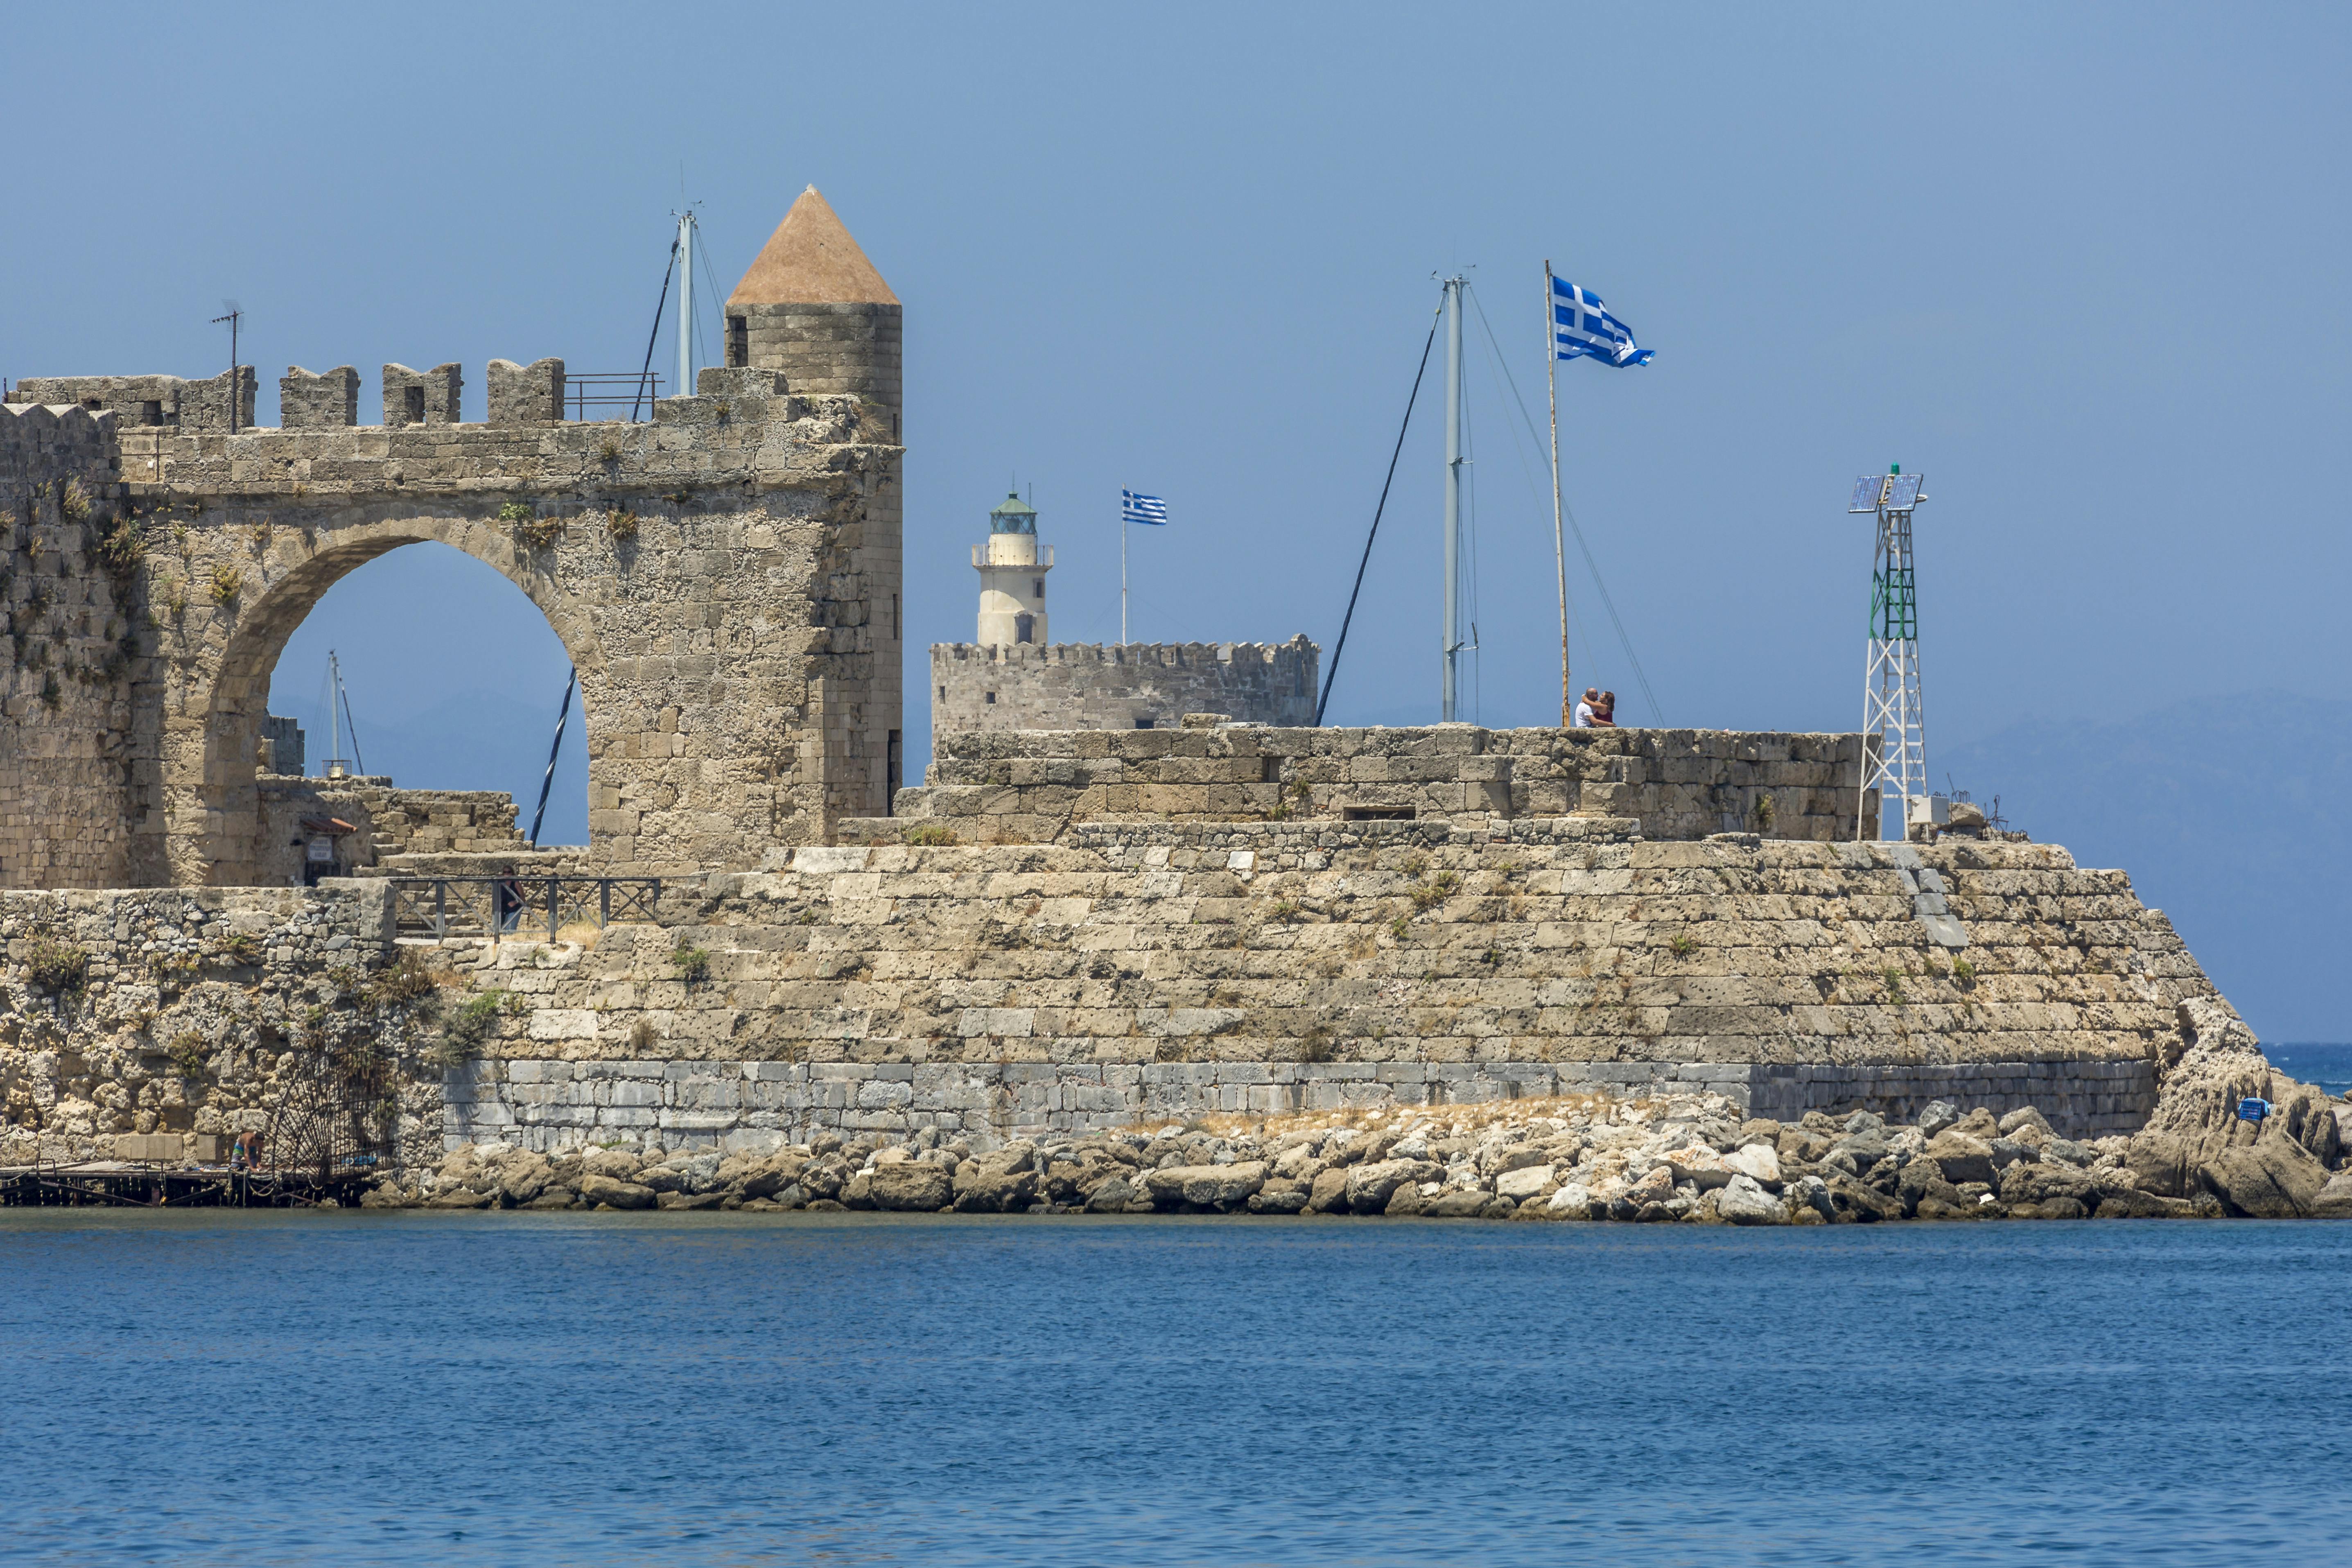 Greek Island of Rhodes Day Trip